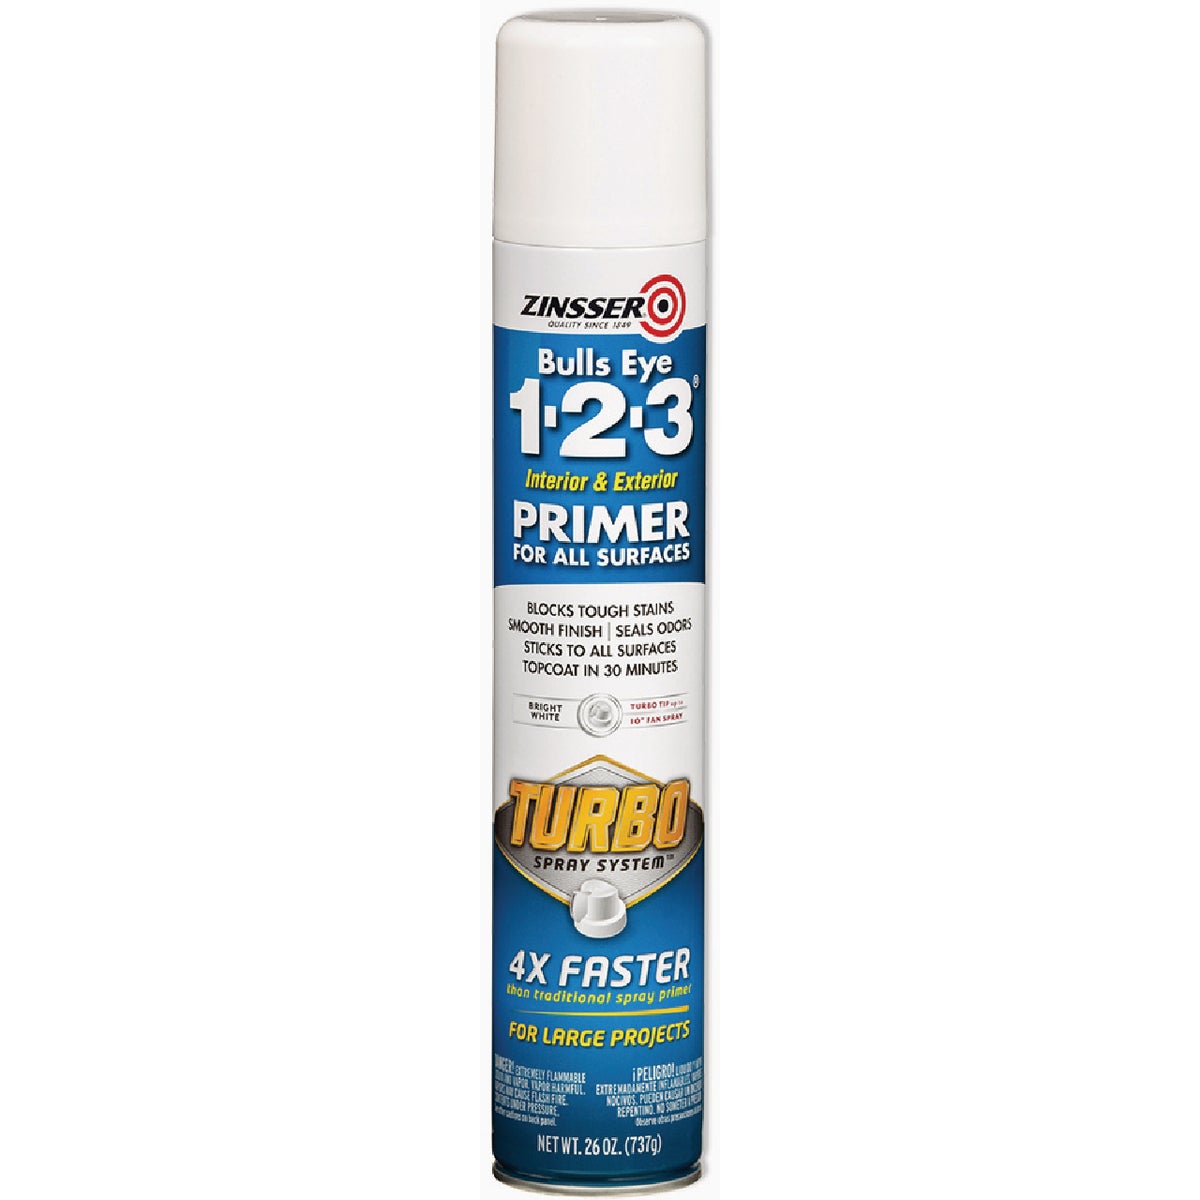 Zinsser 26 Oz. Bulls Eye 1-2-3 Primer Spray with Turbo Spray System, Flat White